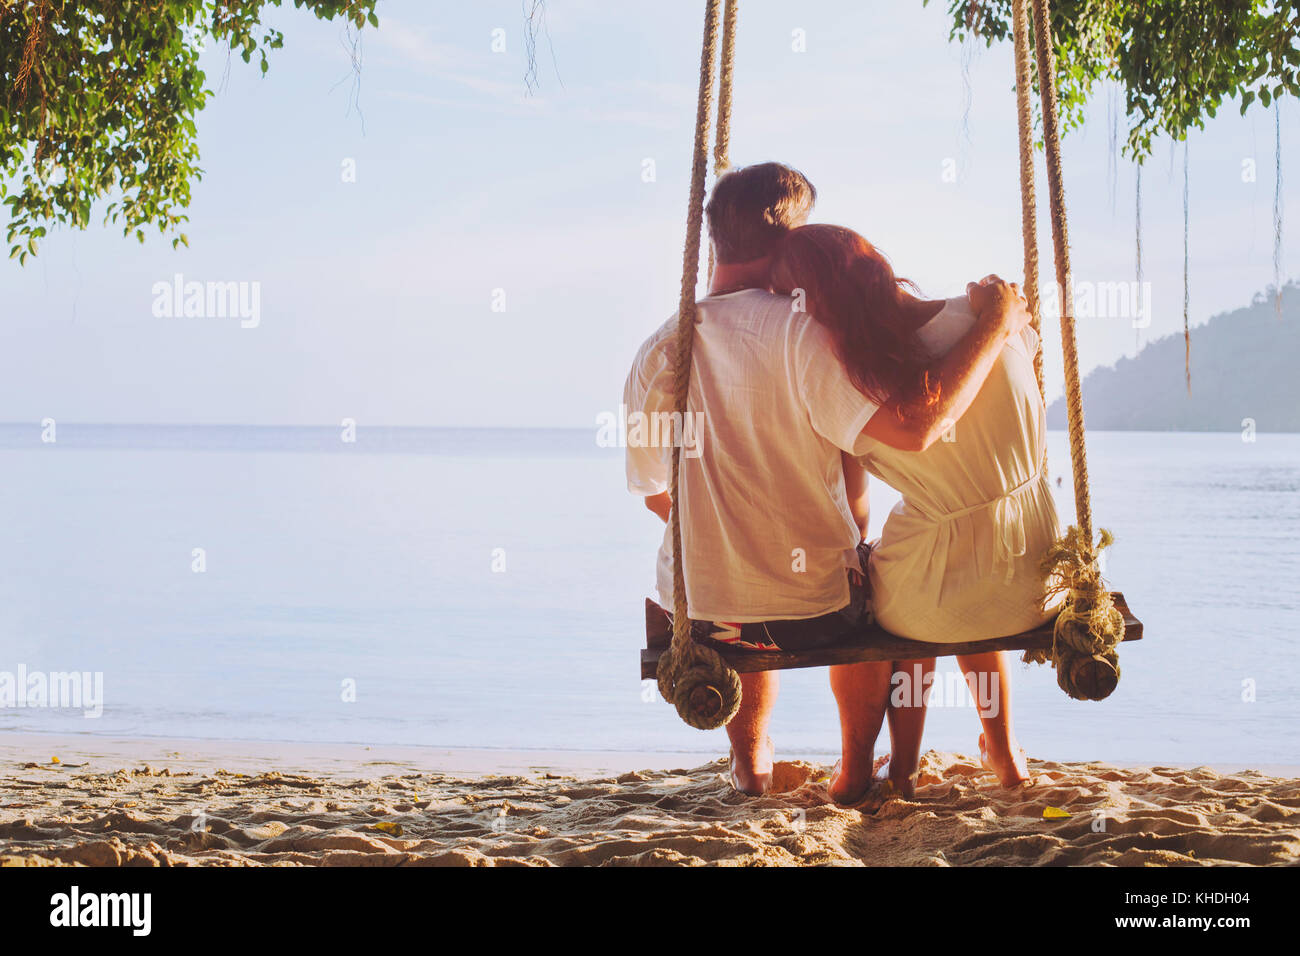 Einen romantischen Urlaub für Zwei, zärtlich Paar zusammen sitzen am Strand auf Swing, Silhouette des Menschen umarmt Frau Stockfoto